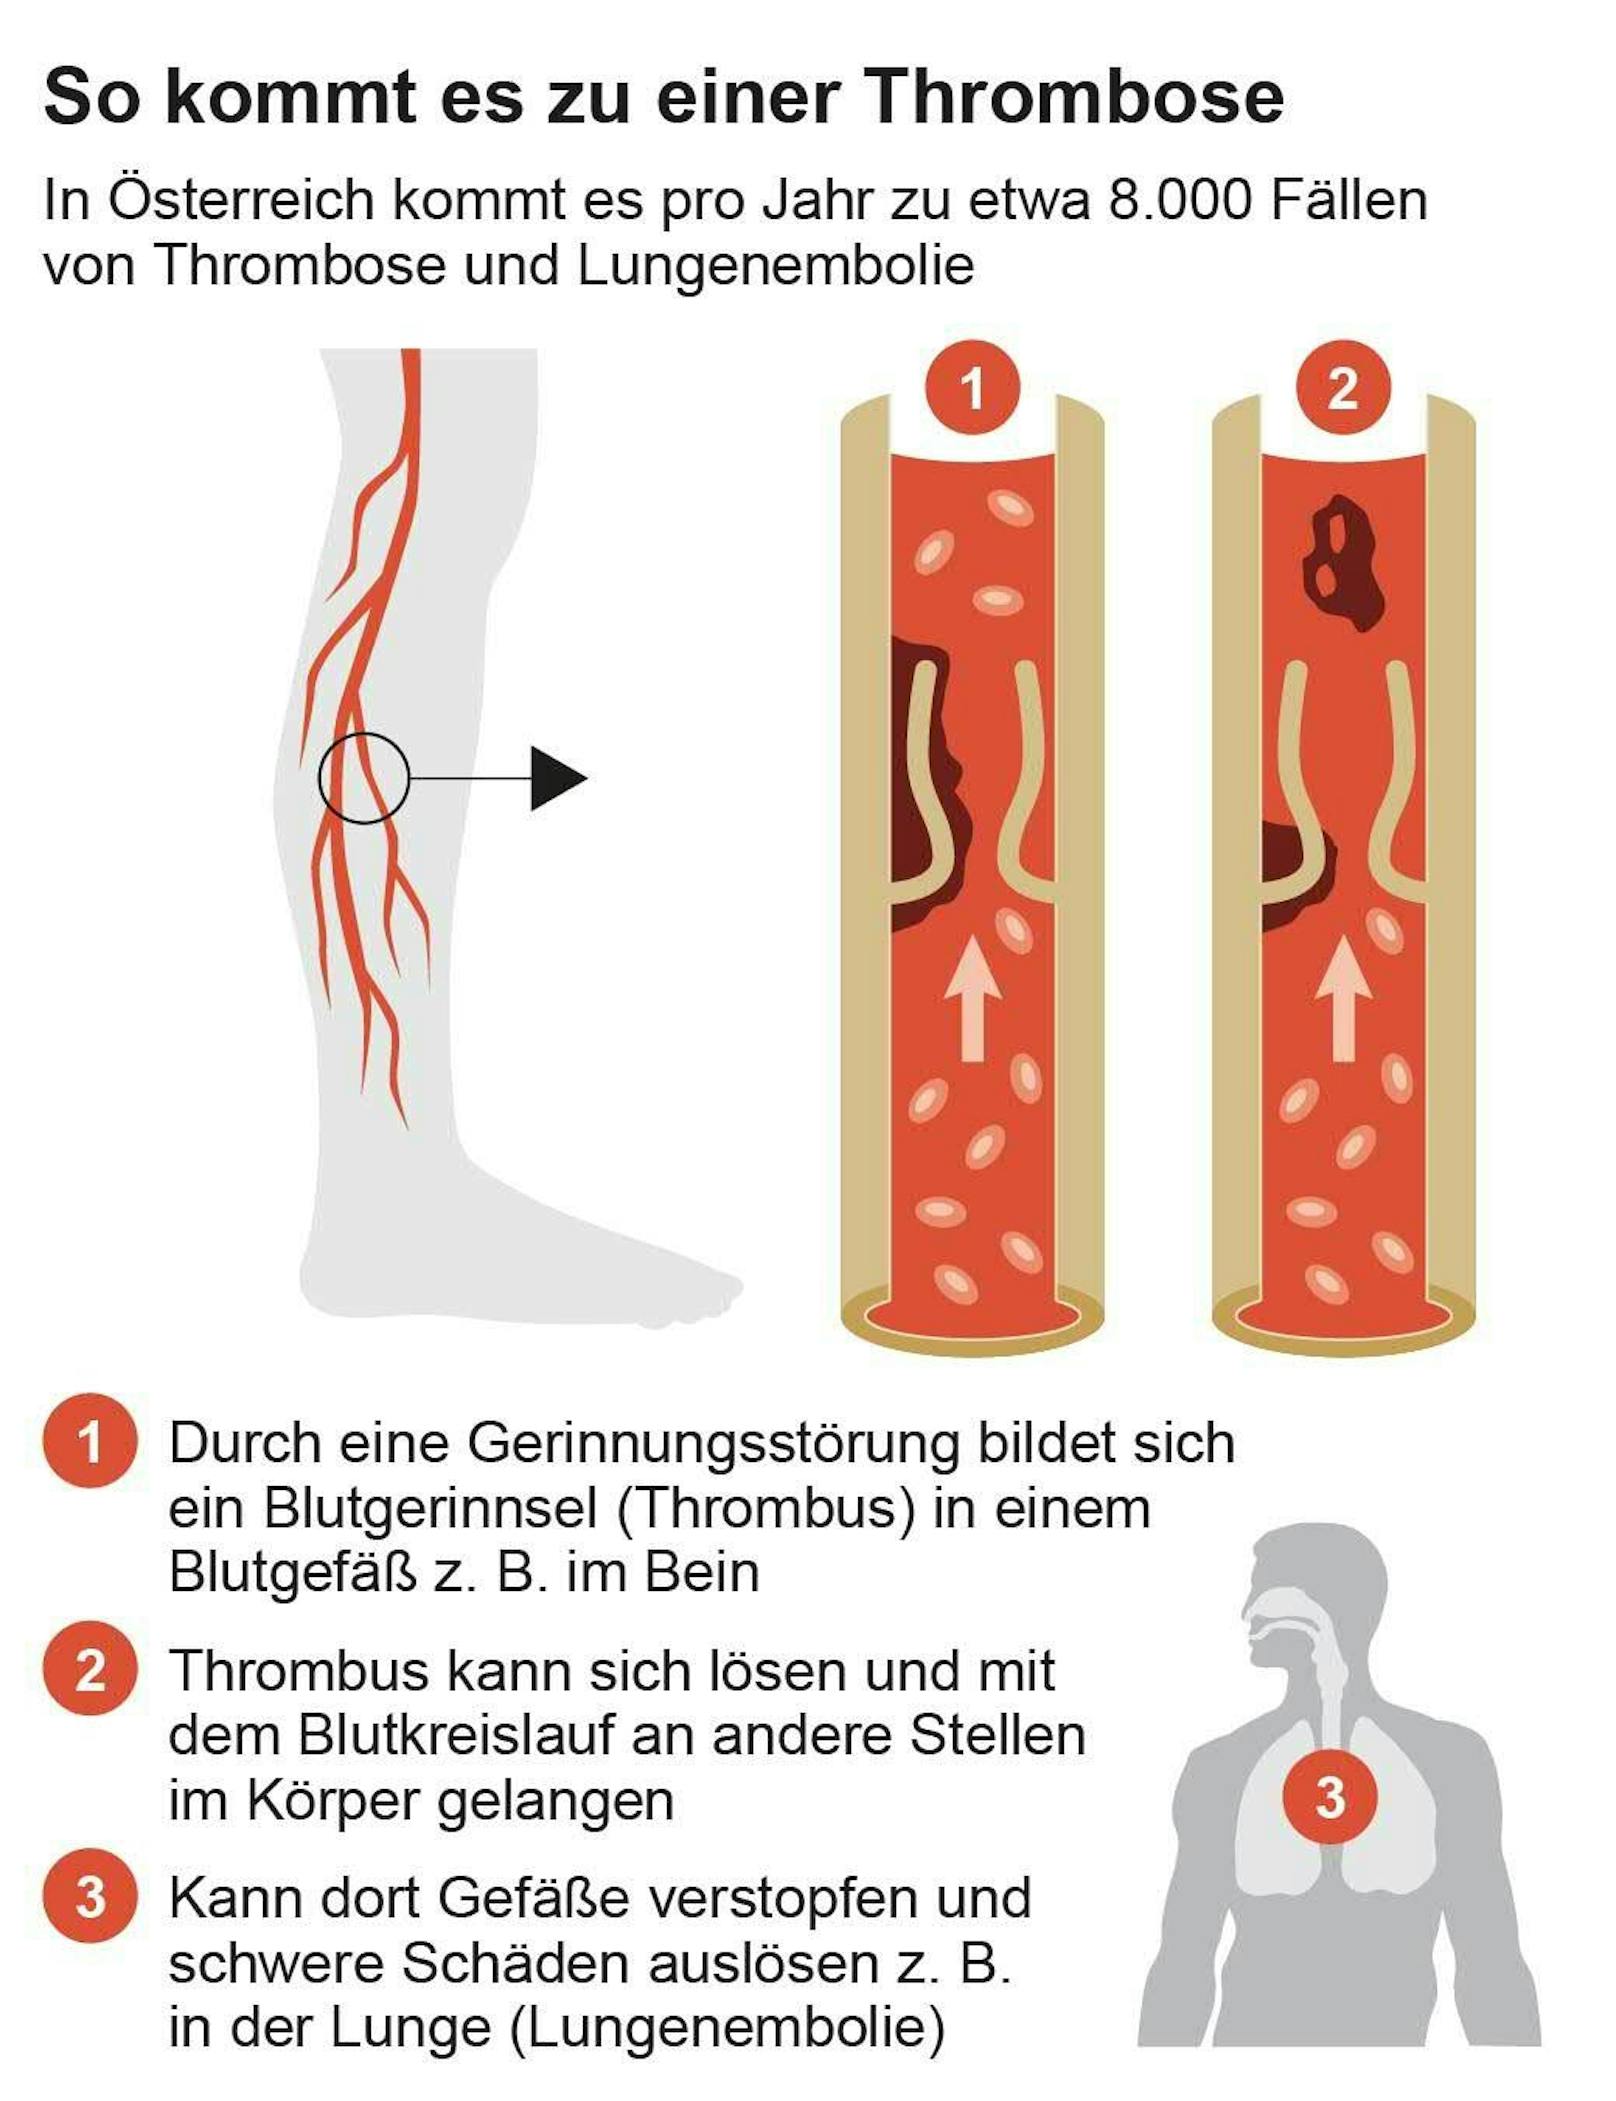 Schematische Darstellung eines Blutgerinnsels (Thrombus)